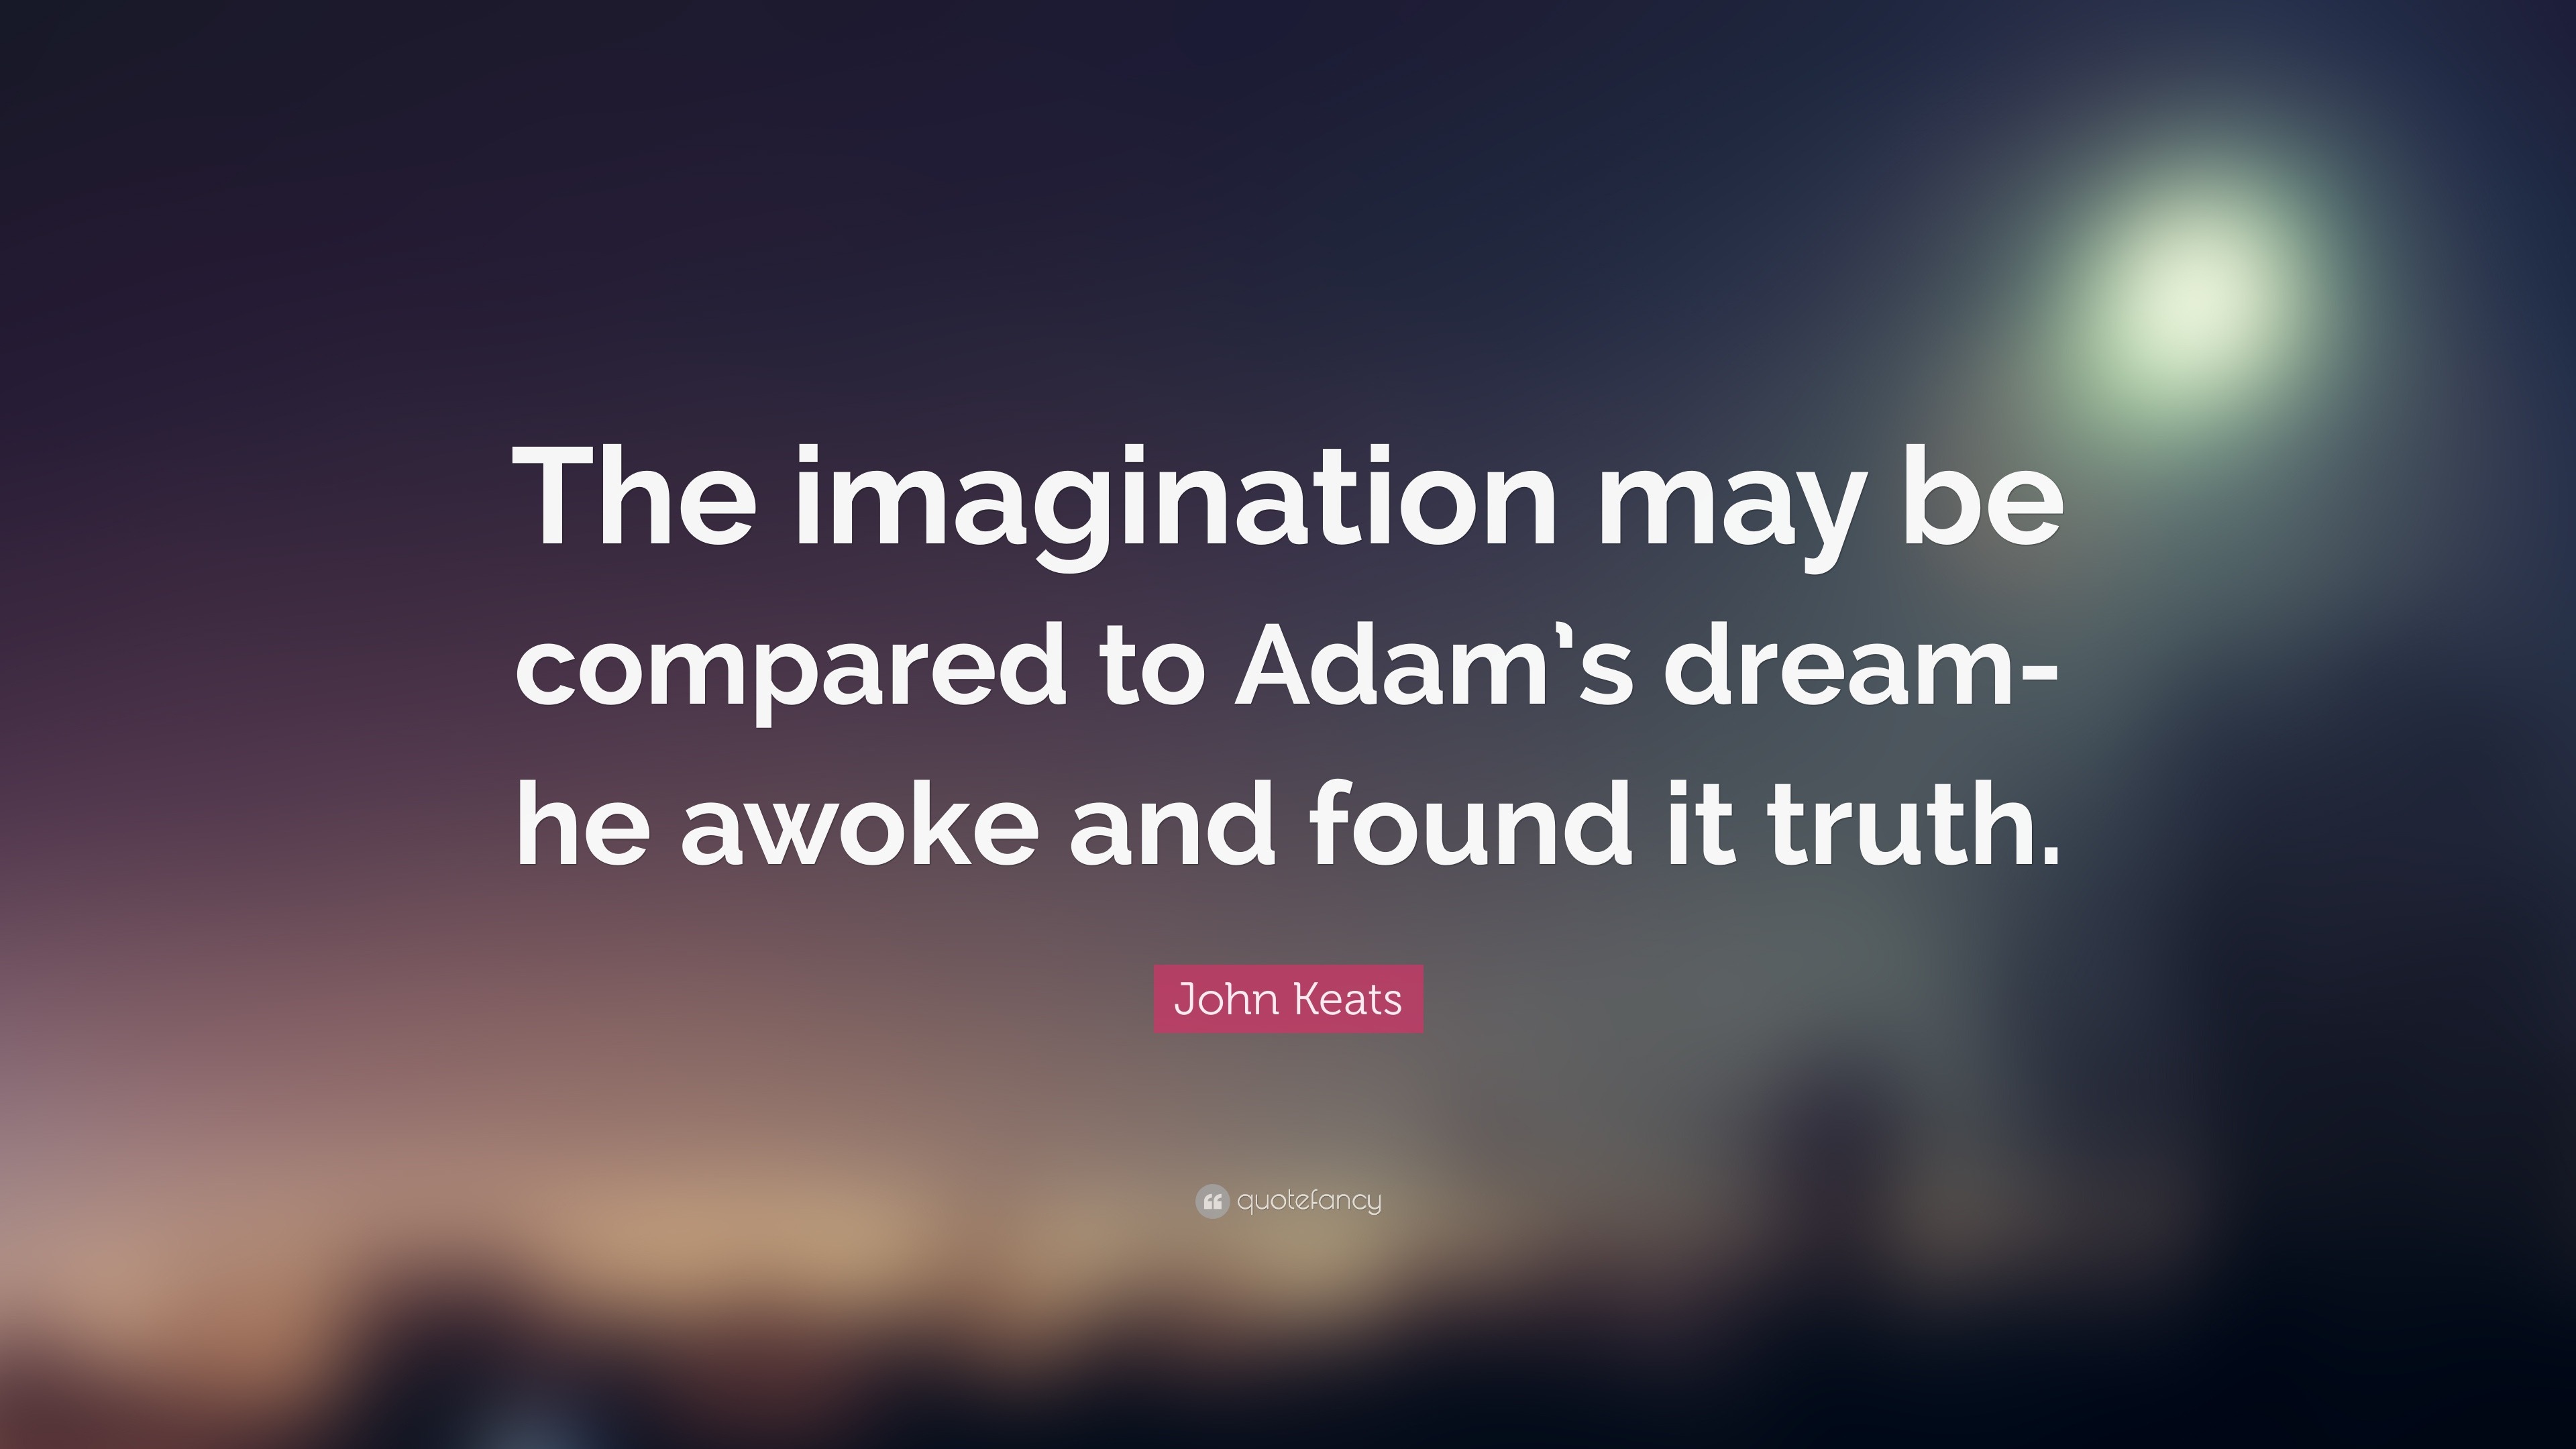 Compare To Imagination